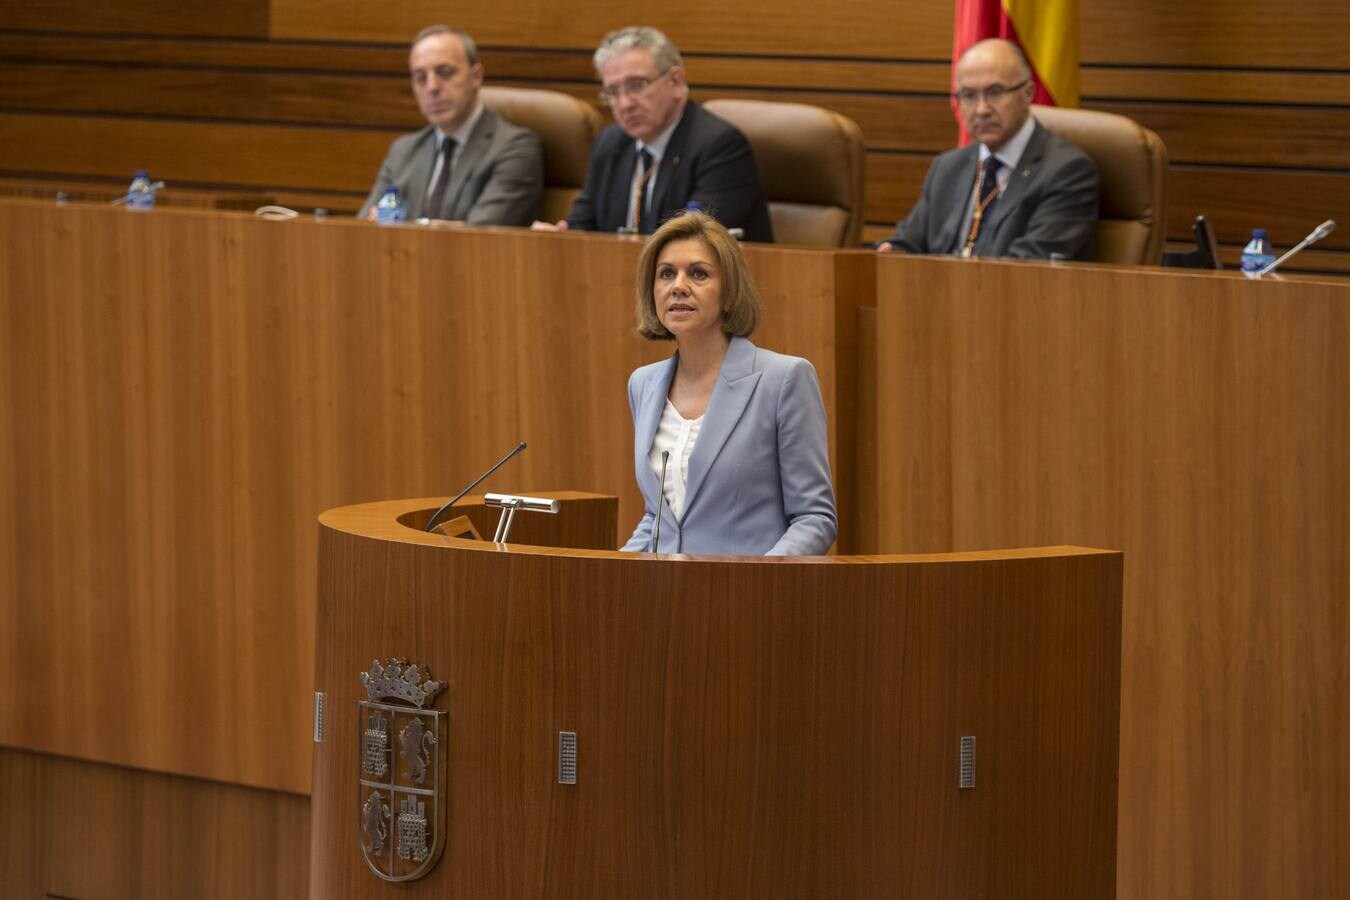 La ministra de Defensa, Dolores de Cospedal, ha aprovechado el acto para defender a ultranza la aplicación de la ley, la Constitución y el Estado de Derecho